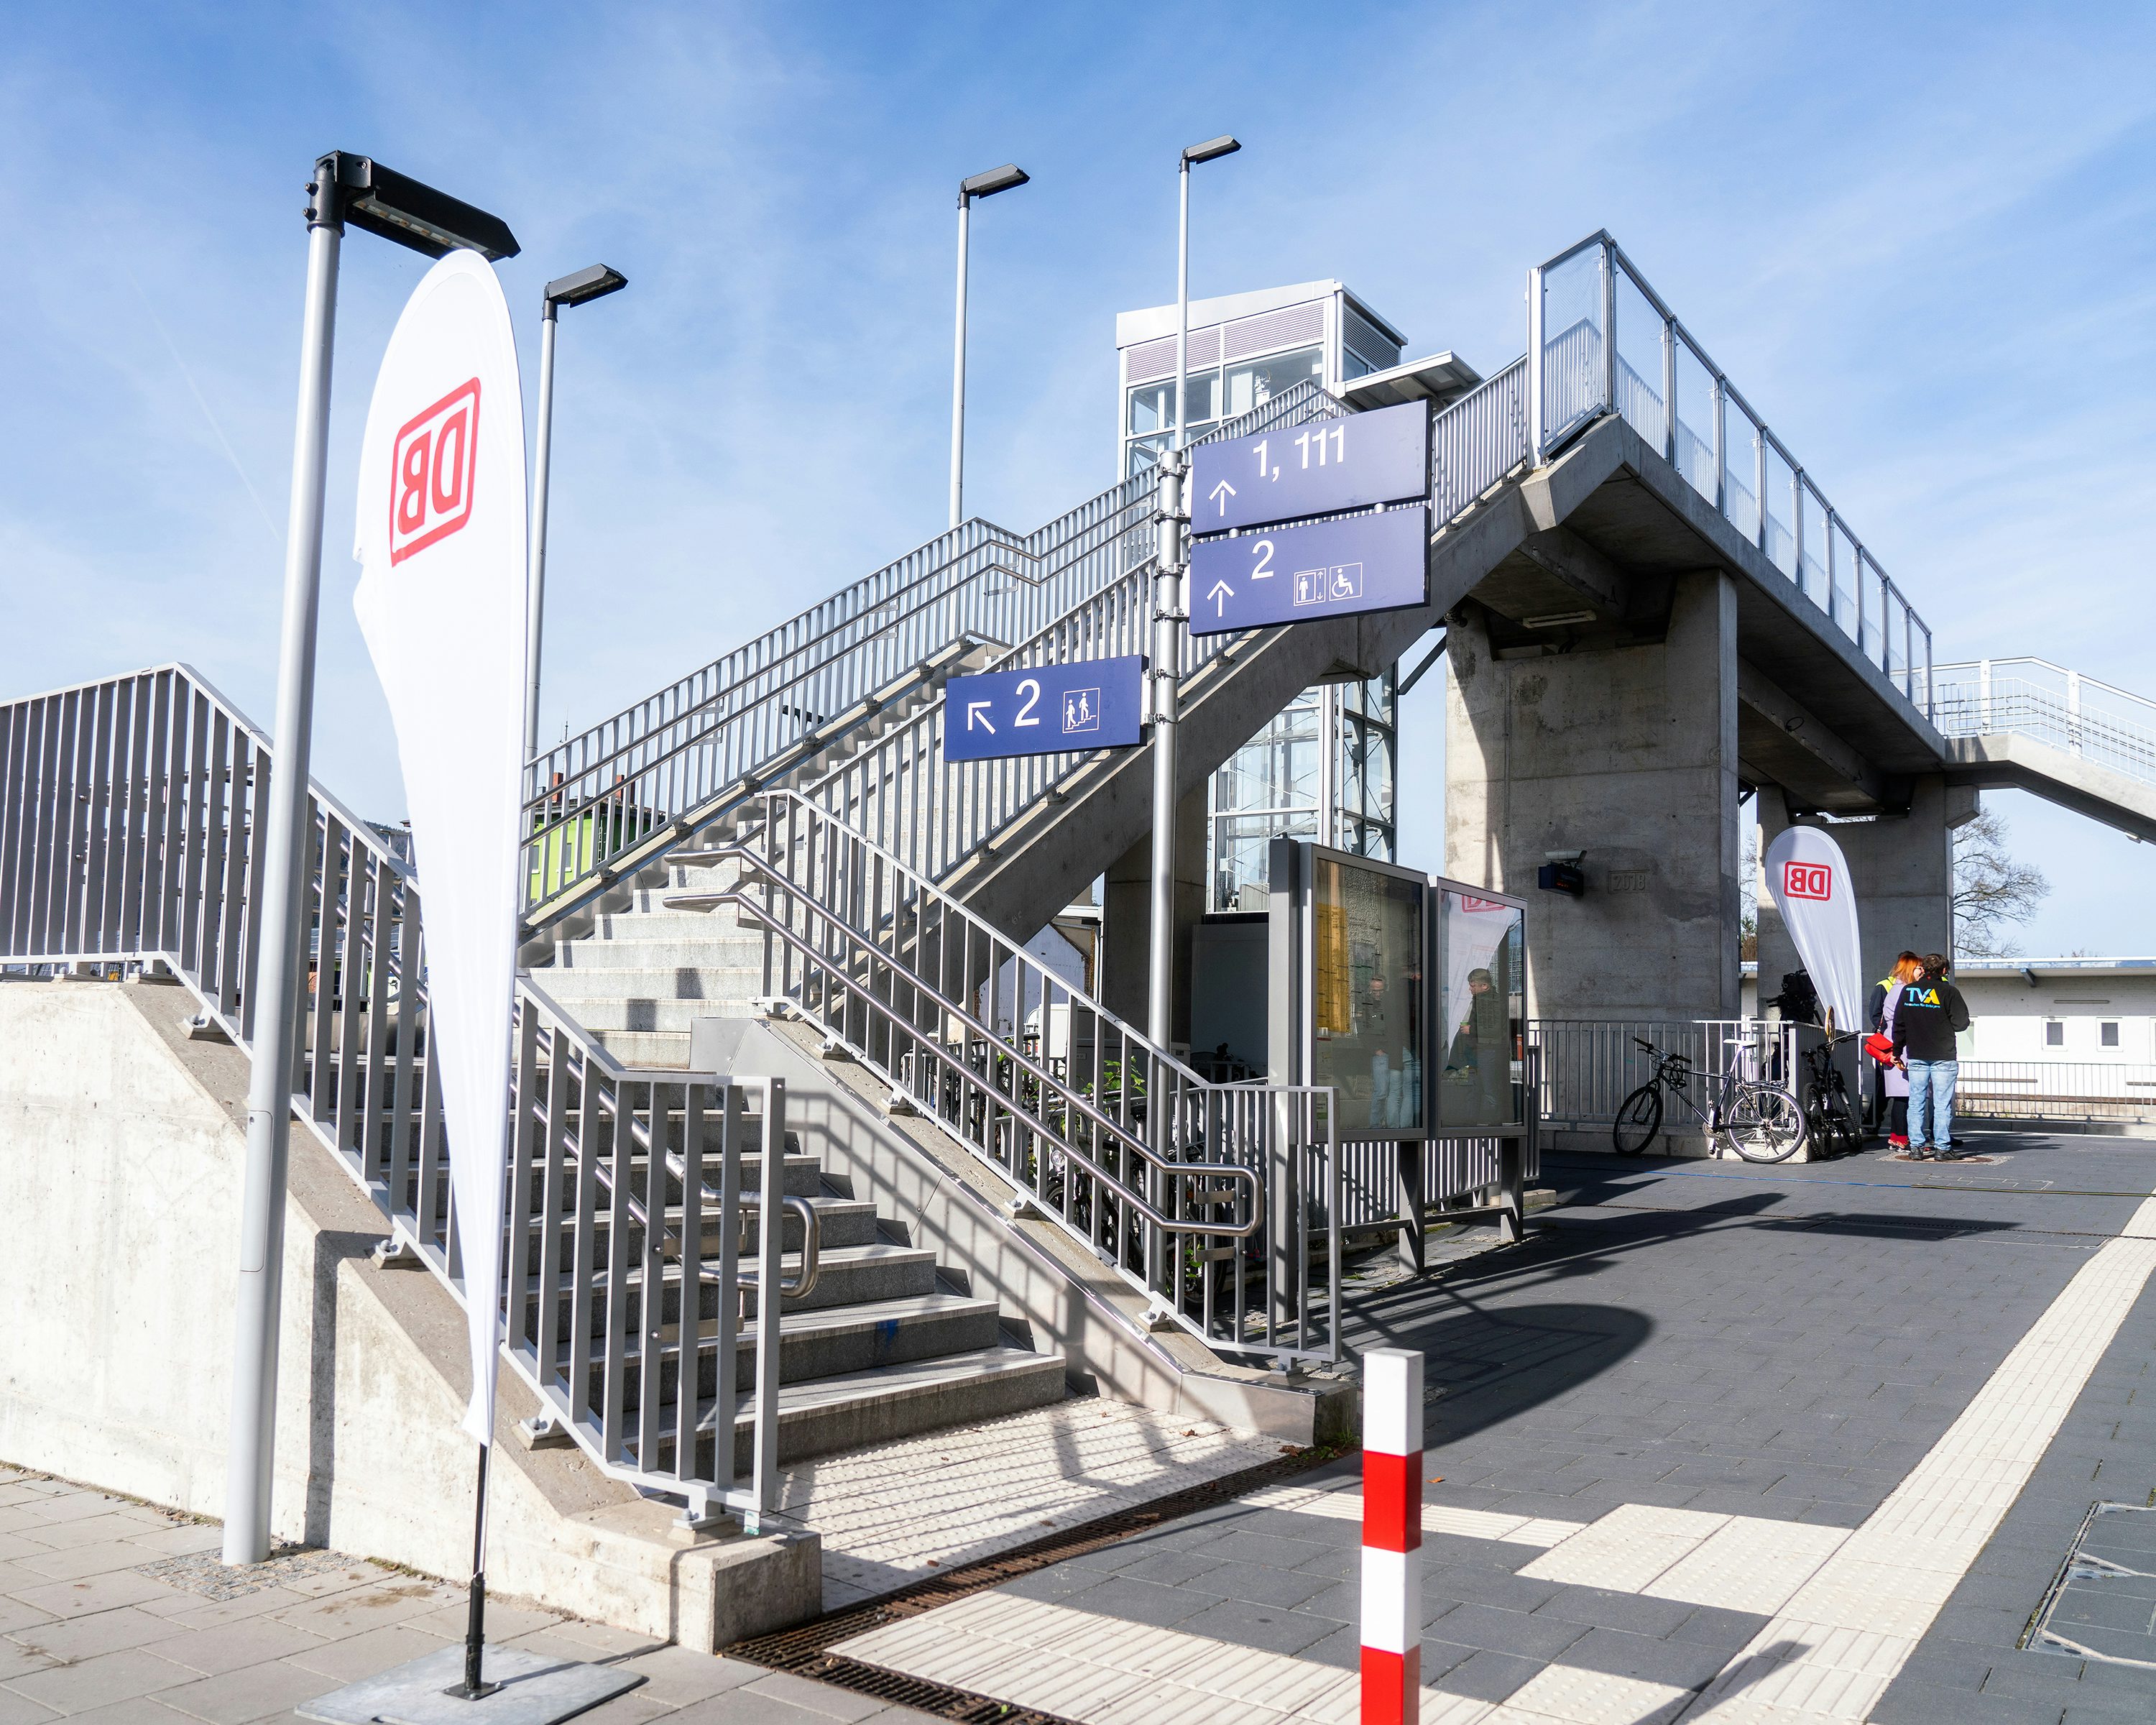 Bahnsteigüberführung zu den Gleisen 2, 1 und 11, die per Treppe und Aufzug erreichbar sind